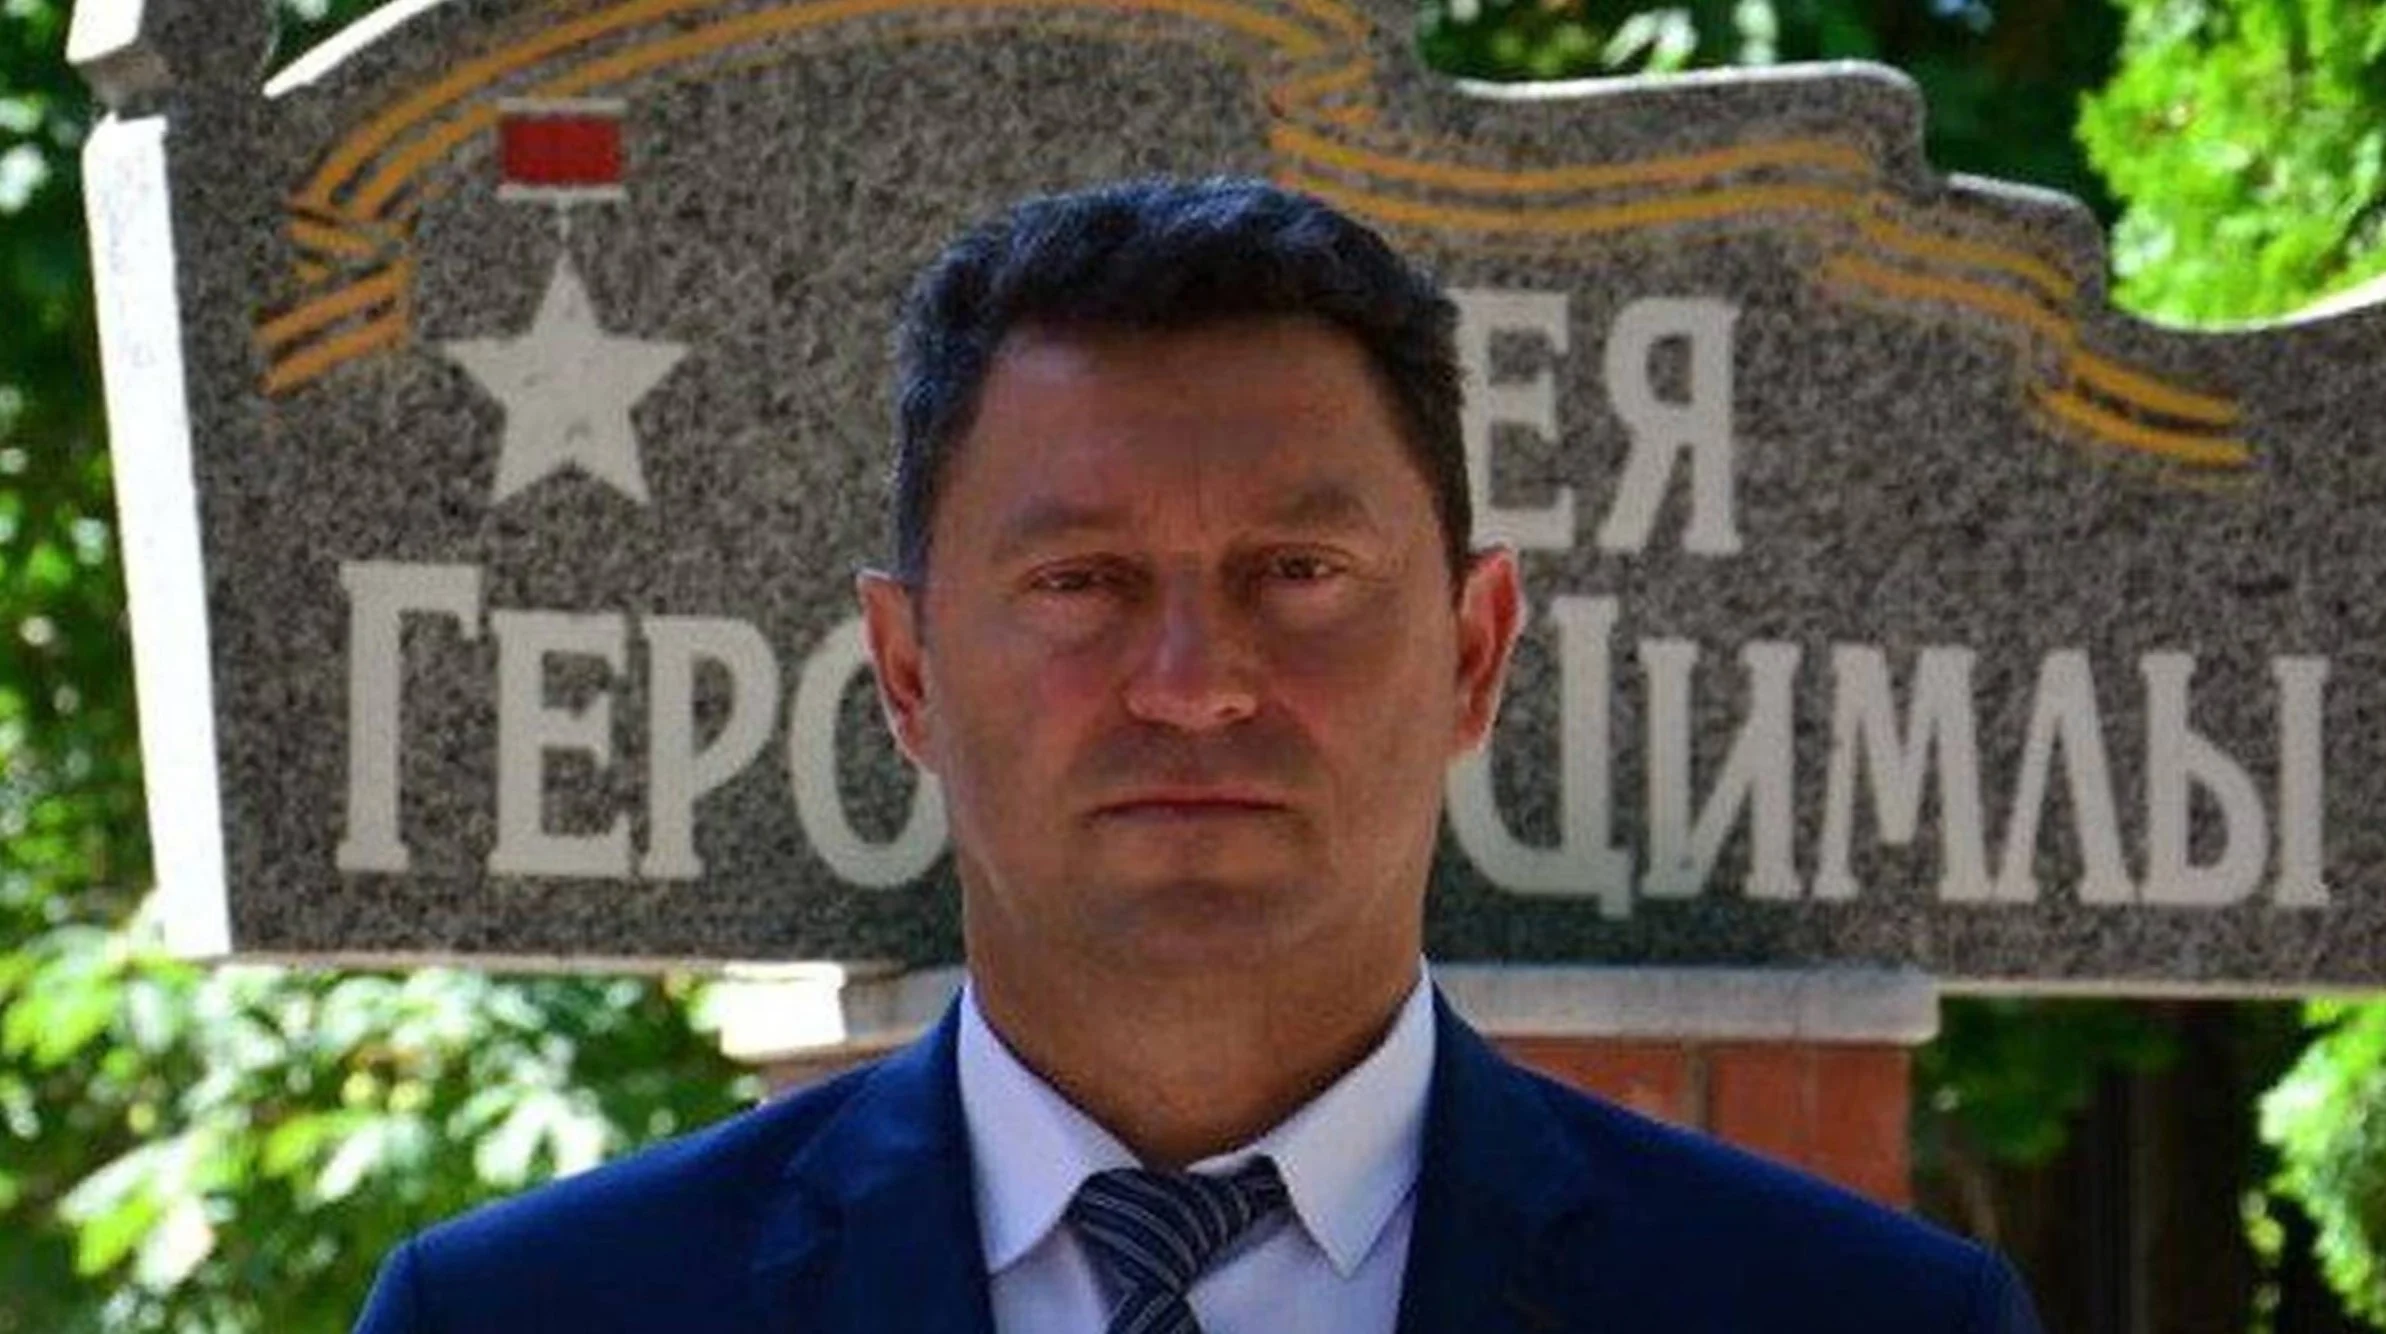 Глава района в Ростовской области Светличный ушёл добровольцем на СВО